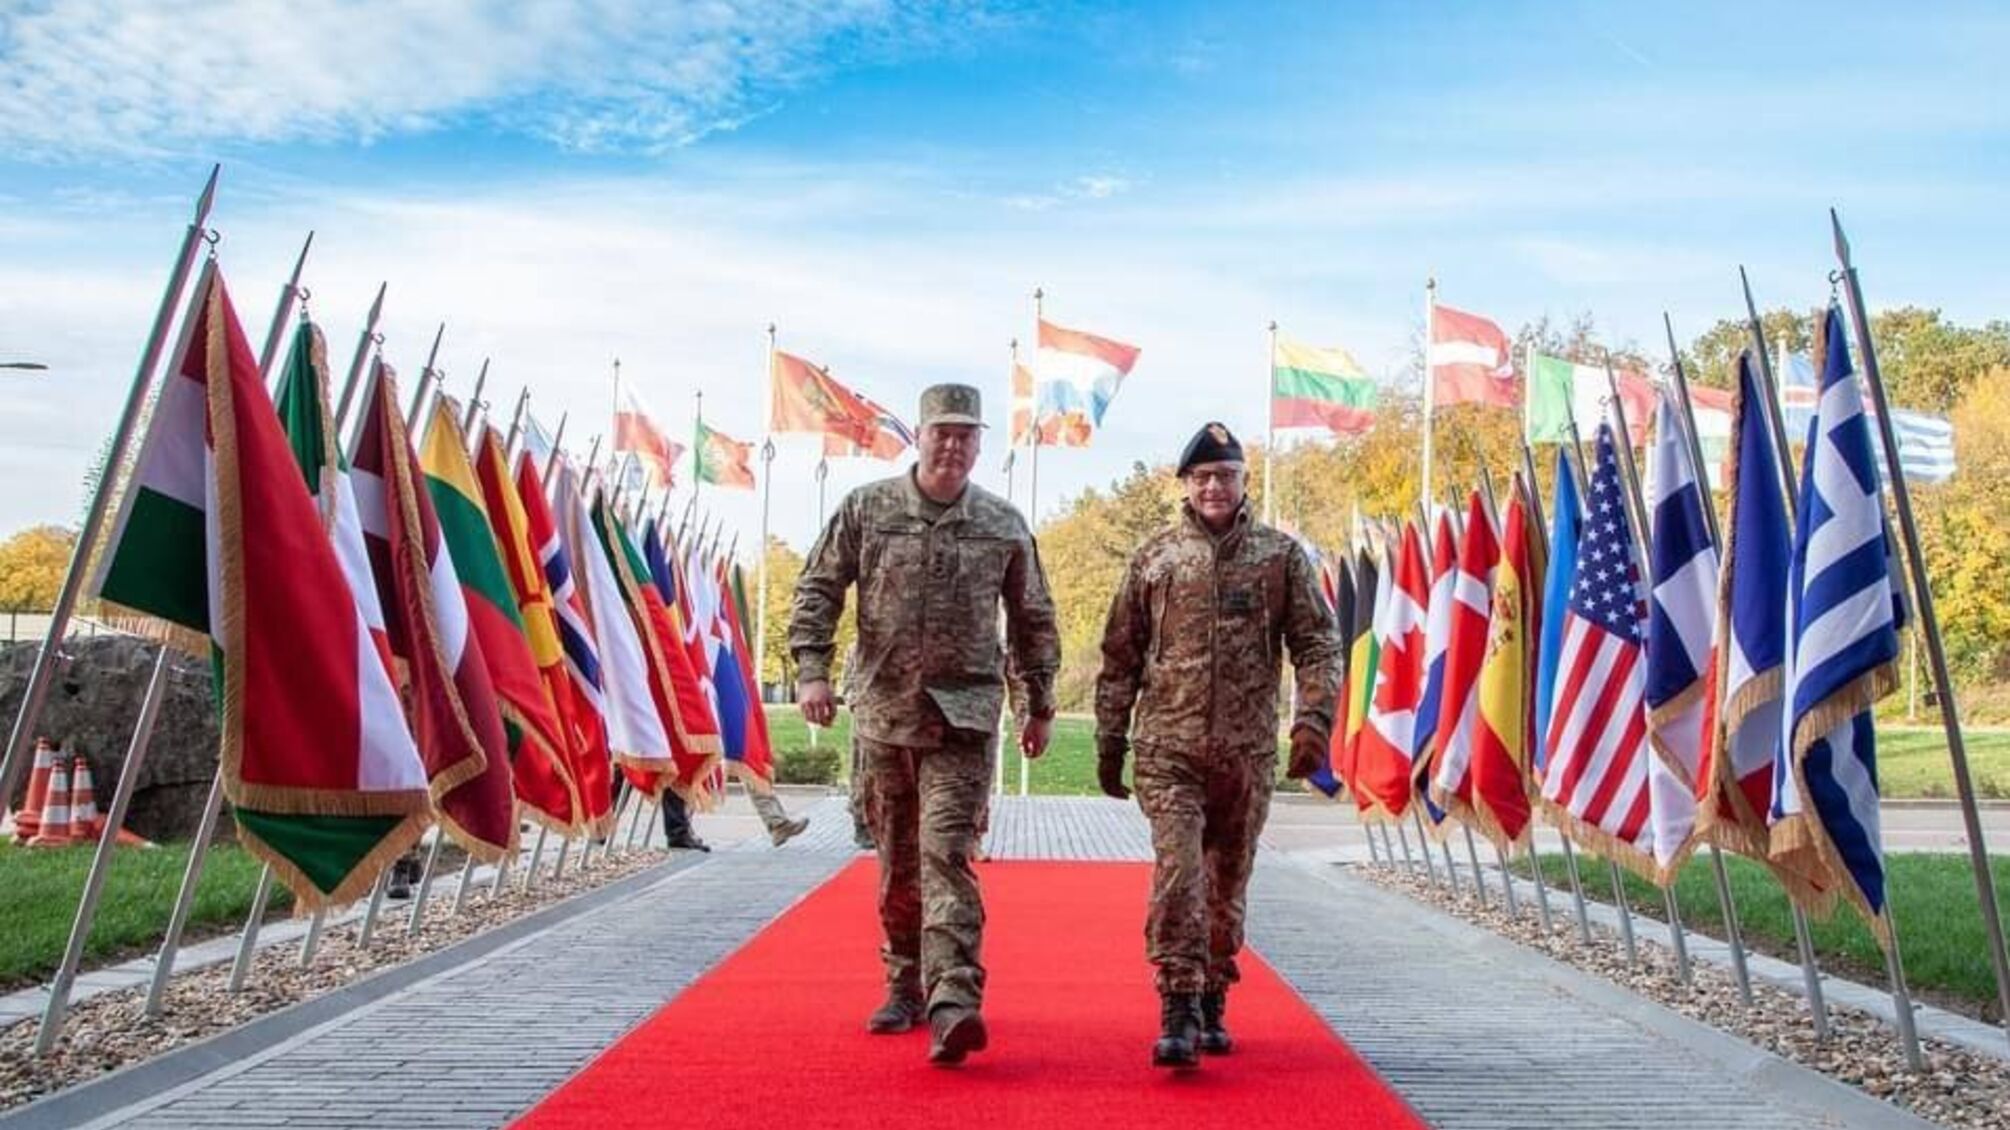 Генерал Наев поделился украинским опытом с партнерами в НАТО